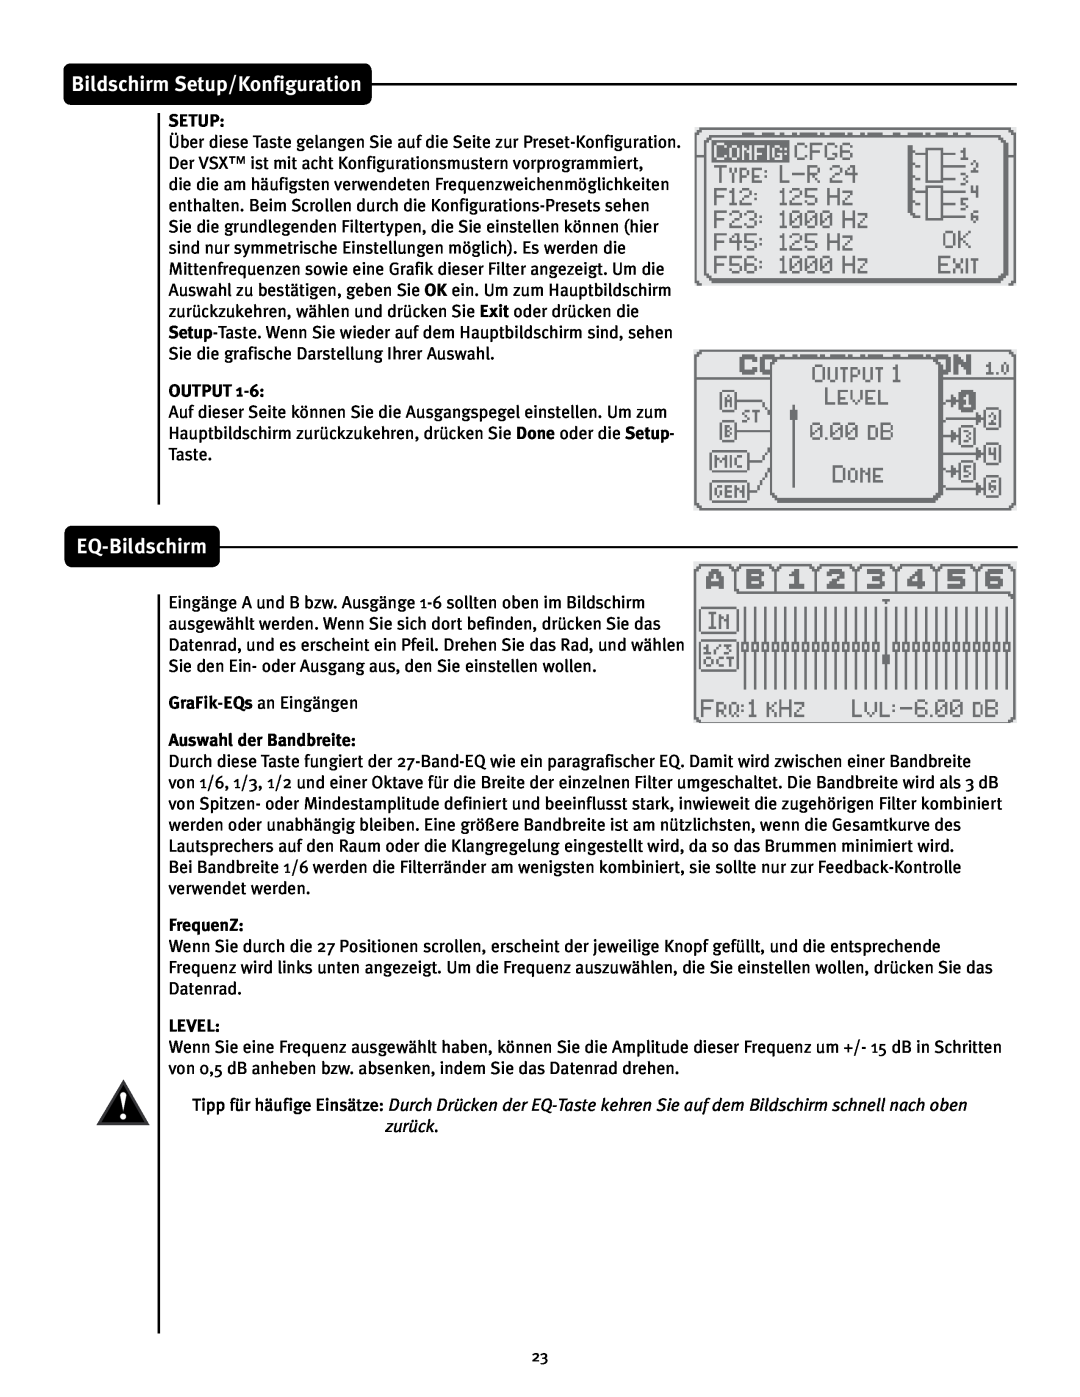 Peavey 26 manual EQ-Bildschirm, Bildschirm Setup/Konfiguration, Output, Auswahl der Bandbreite, FrequenZ, Level 